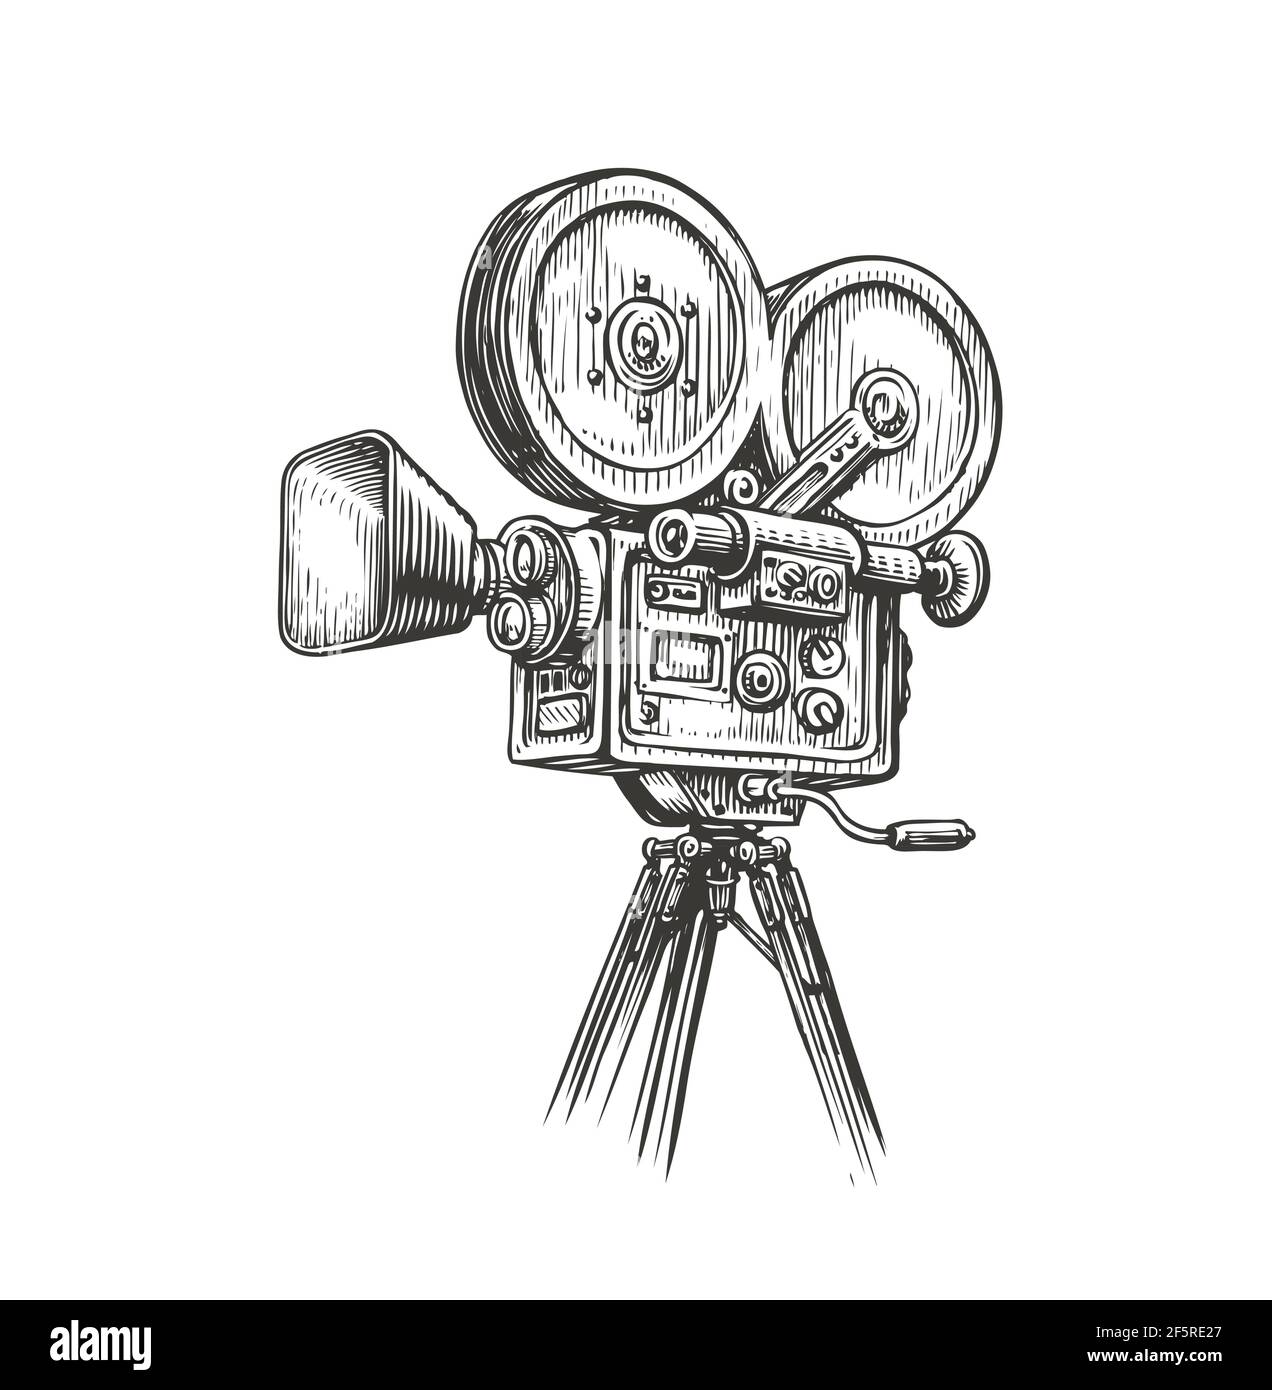 Esquisse d'une caméra de cinéma à l'ancienne. Illustration vectorielle vintage du concept de production vidéo Illustration de Vecteur